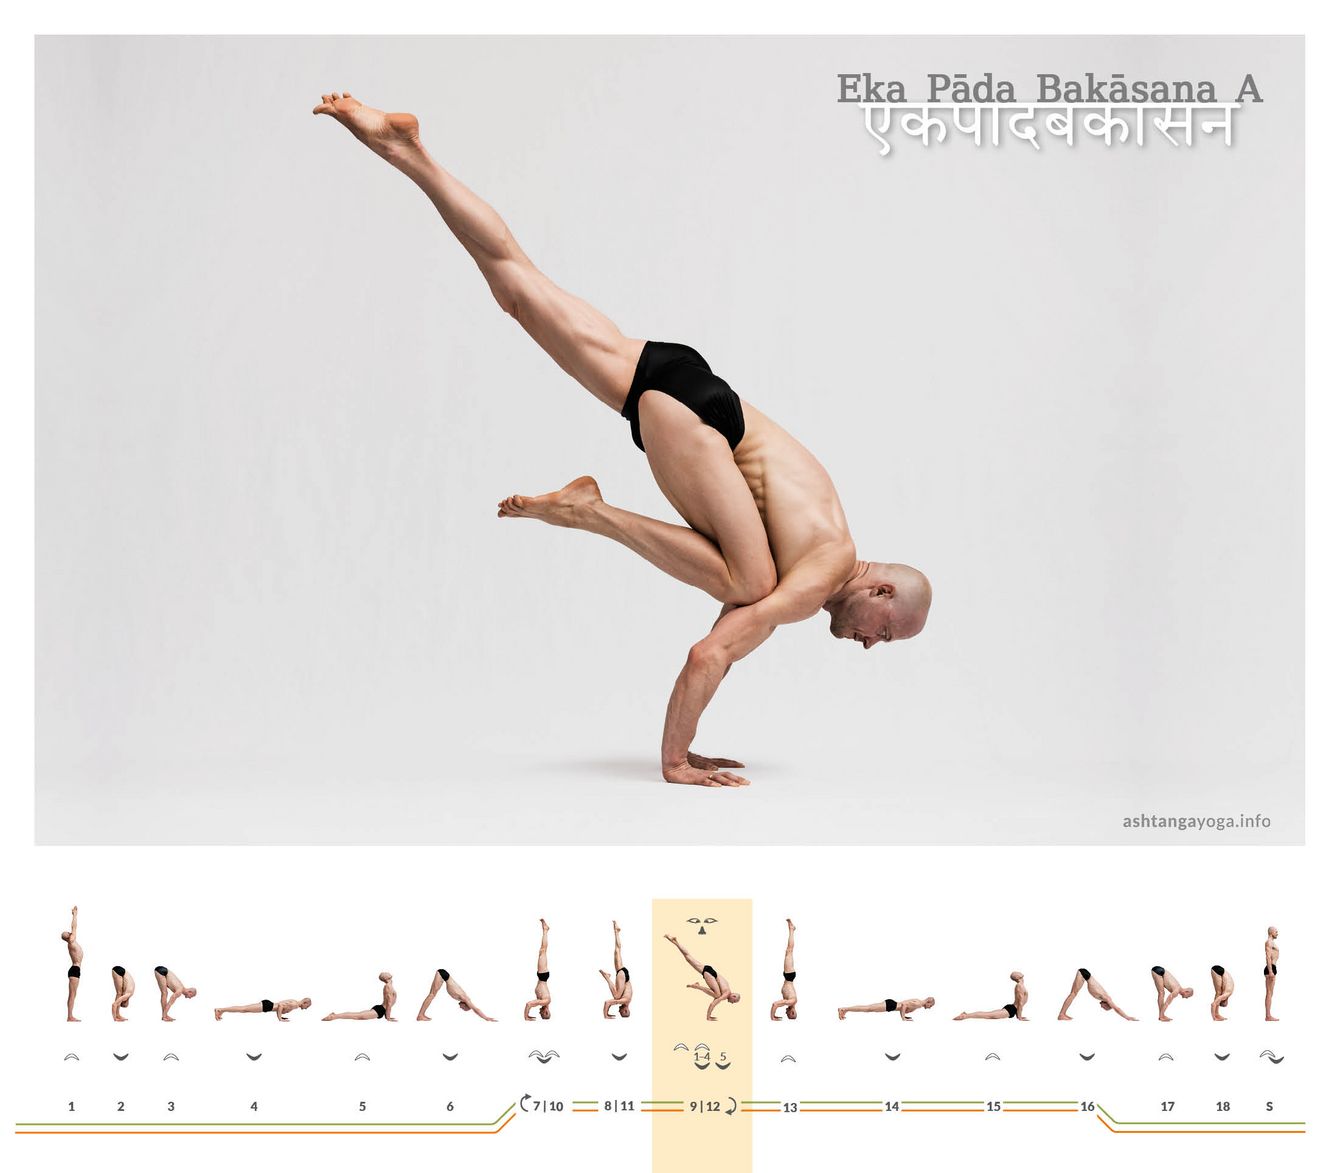 Eka Pada Bakasana, oder Einbeinige-Kranich-Haltung, ist, in Variante A, eine fortgeschrittene Yoga-Pose, die auf den Armen balanciert. Ein Knie ist am Ellenbogen abgestützt, das andere Bein himmelwärts gestreckt.